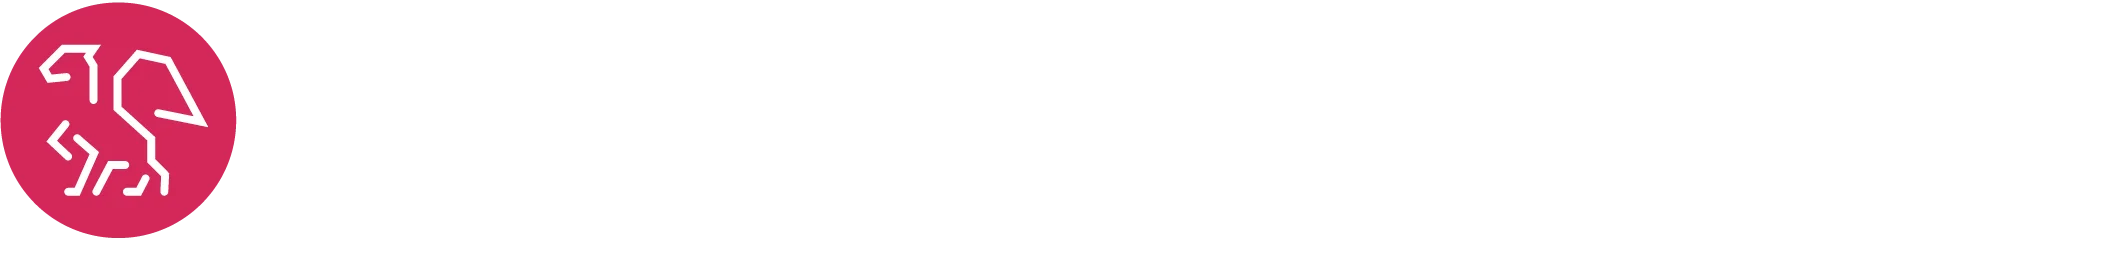 ang logo - białe ze smokiem